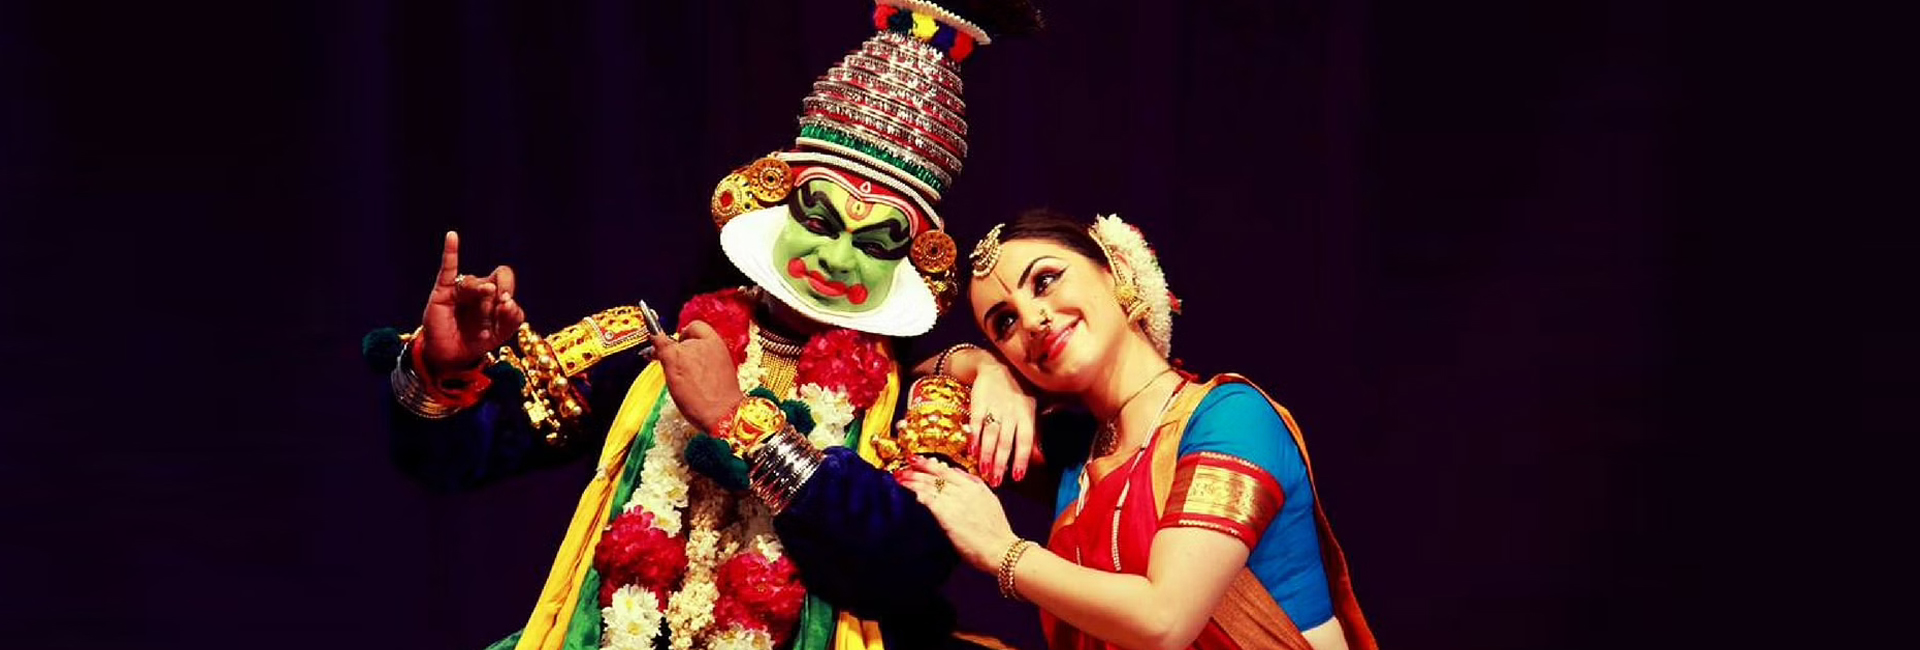 पेरिस लक्ष्मी: भरतनाट्यम के माध्यम से संस्कृतियों को जोड़ना - एक फ्रांसीसी पहेली का नृत्य ओडिसी